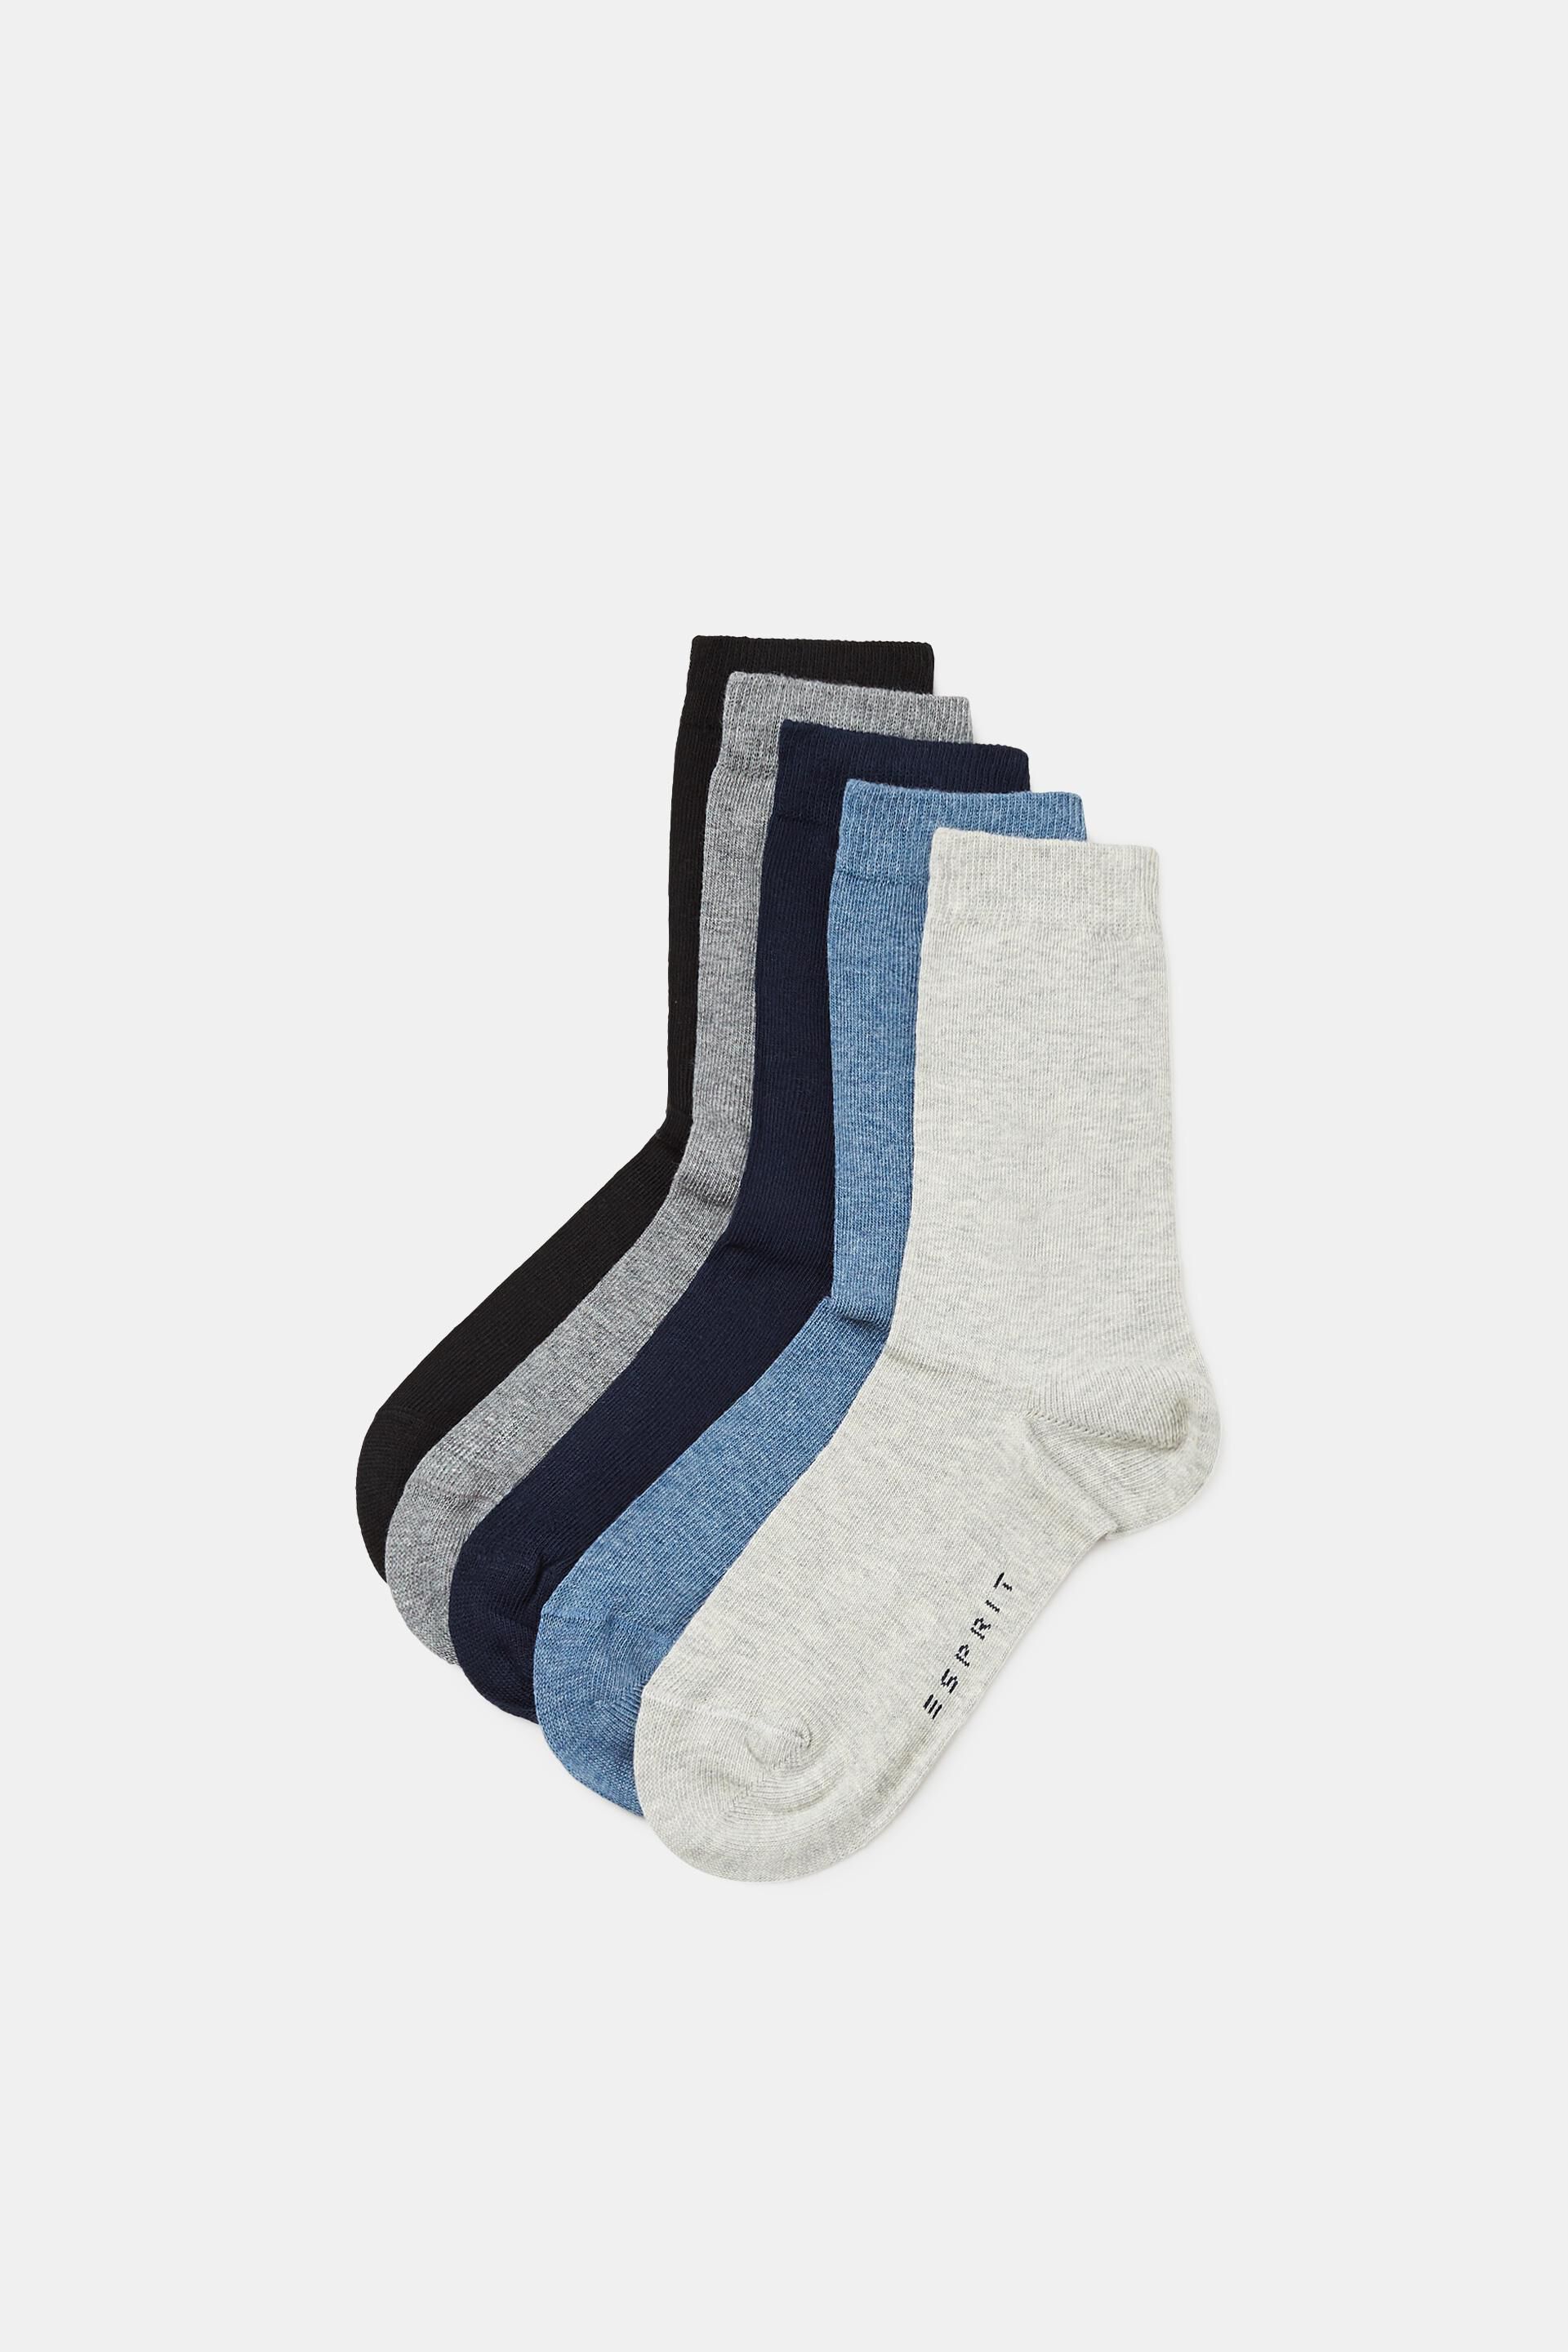 ESPRIT Socken Foot Logo 2-Pack Bio Baumwolle Kinder grau blau viele weitere Farben verstärkte Kindersocken ohne Muster atmungsaktiv dünn und einfarbig im Multipack Doppelpack 2 Paar 